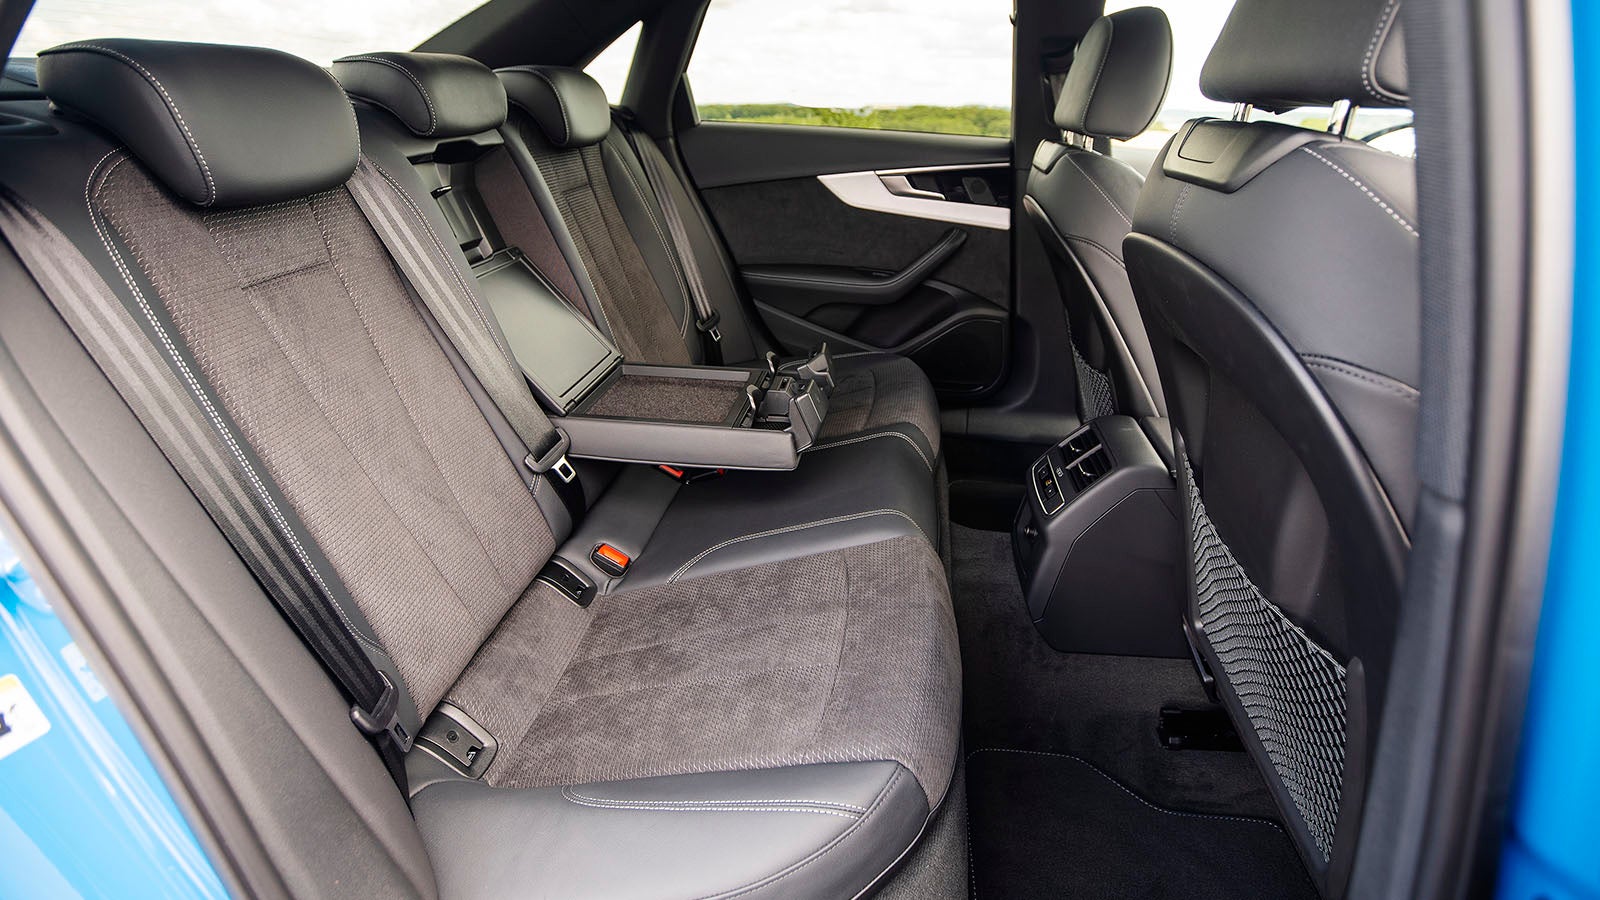 Audi A4 review rear seats